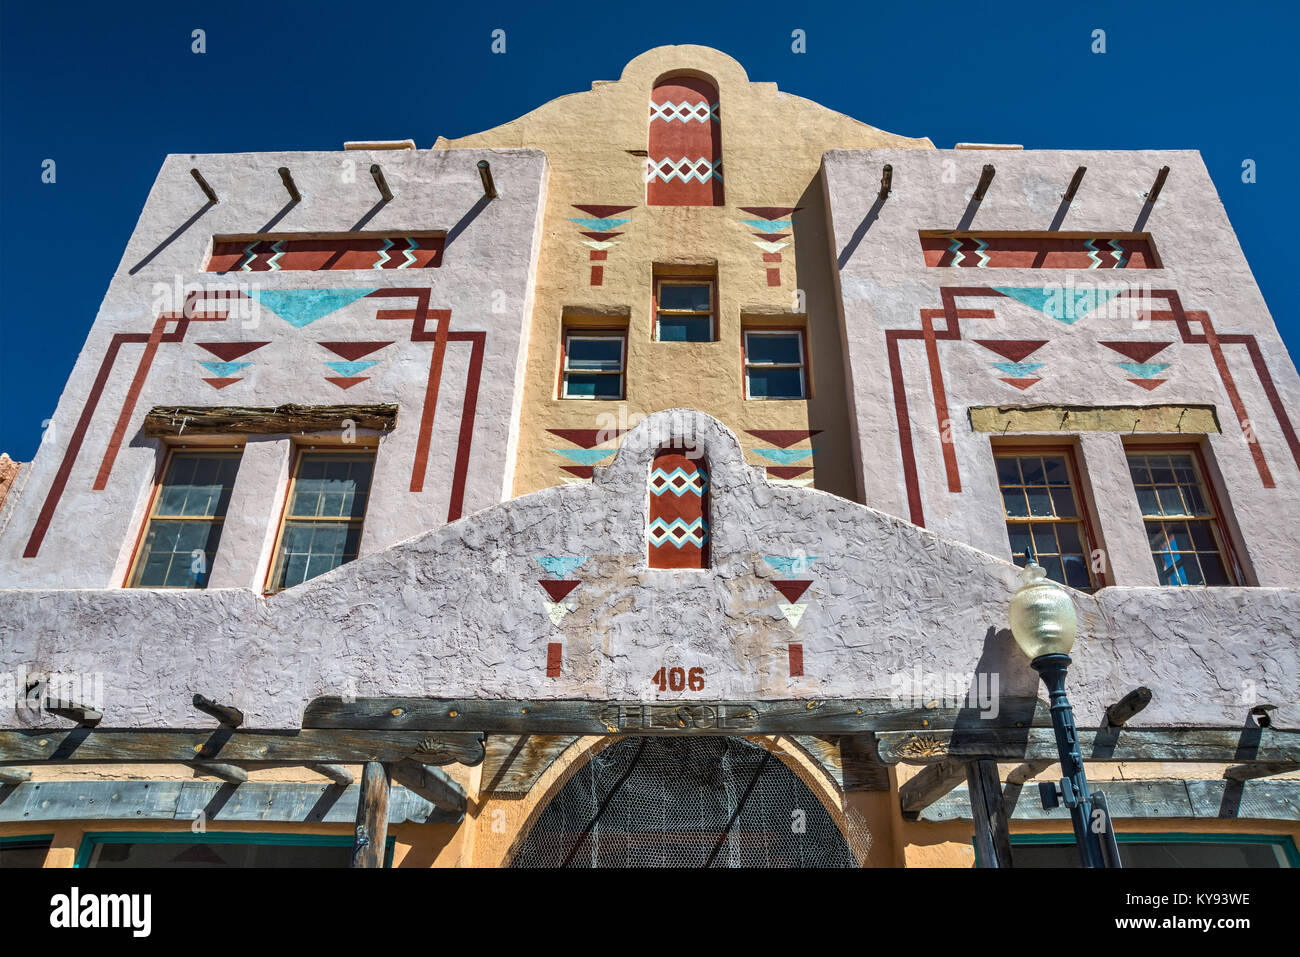 El Sol teatro, cinema storico edificio con motivi ispirati dai disegni indiani a Bullard Street nella città di argento, Nuovo Messico, STATI UNITI D'AMERICA Foto Stock